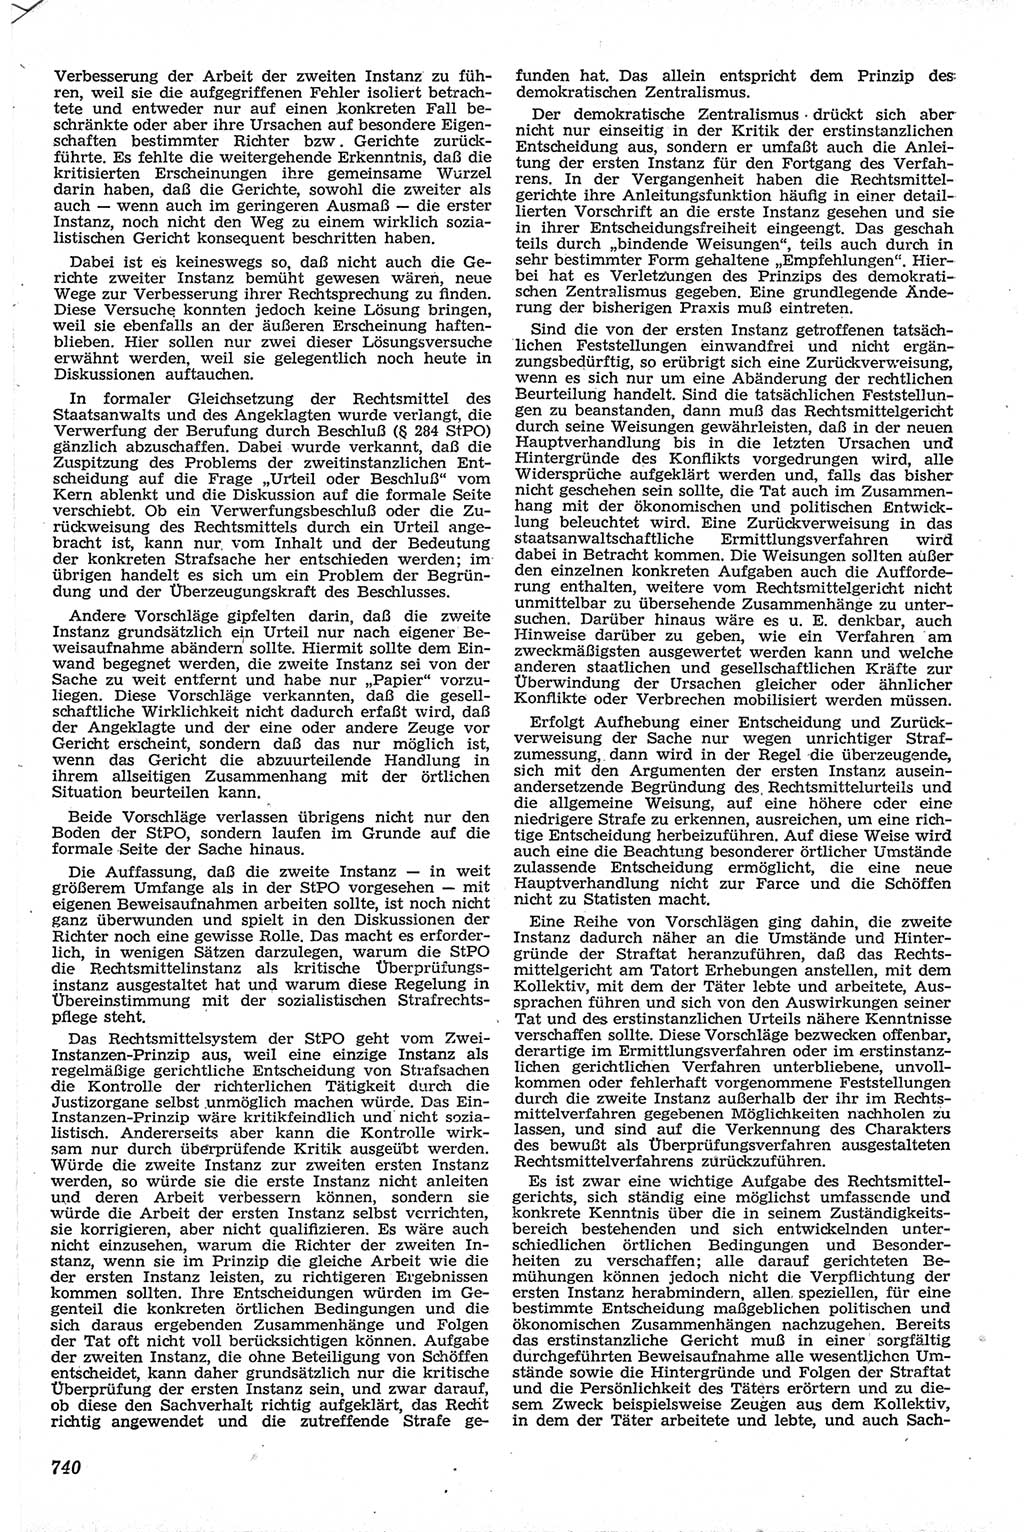 Neue Justiz (NJ), Zeitschrift für Recht und Rechtswissenschaft [Deutsche Demokratische Republik (DDR)], 13. Jahrgang 1959, Seite 740 (NJ DDR 1959, S. 740)